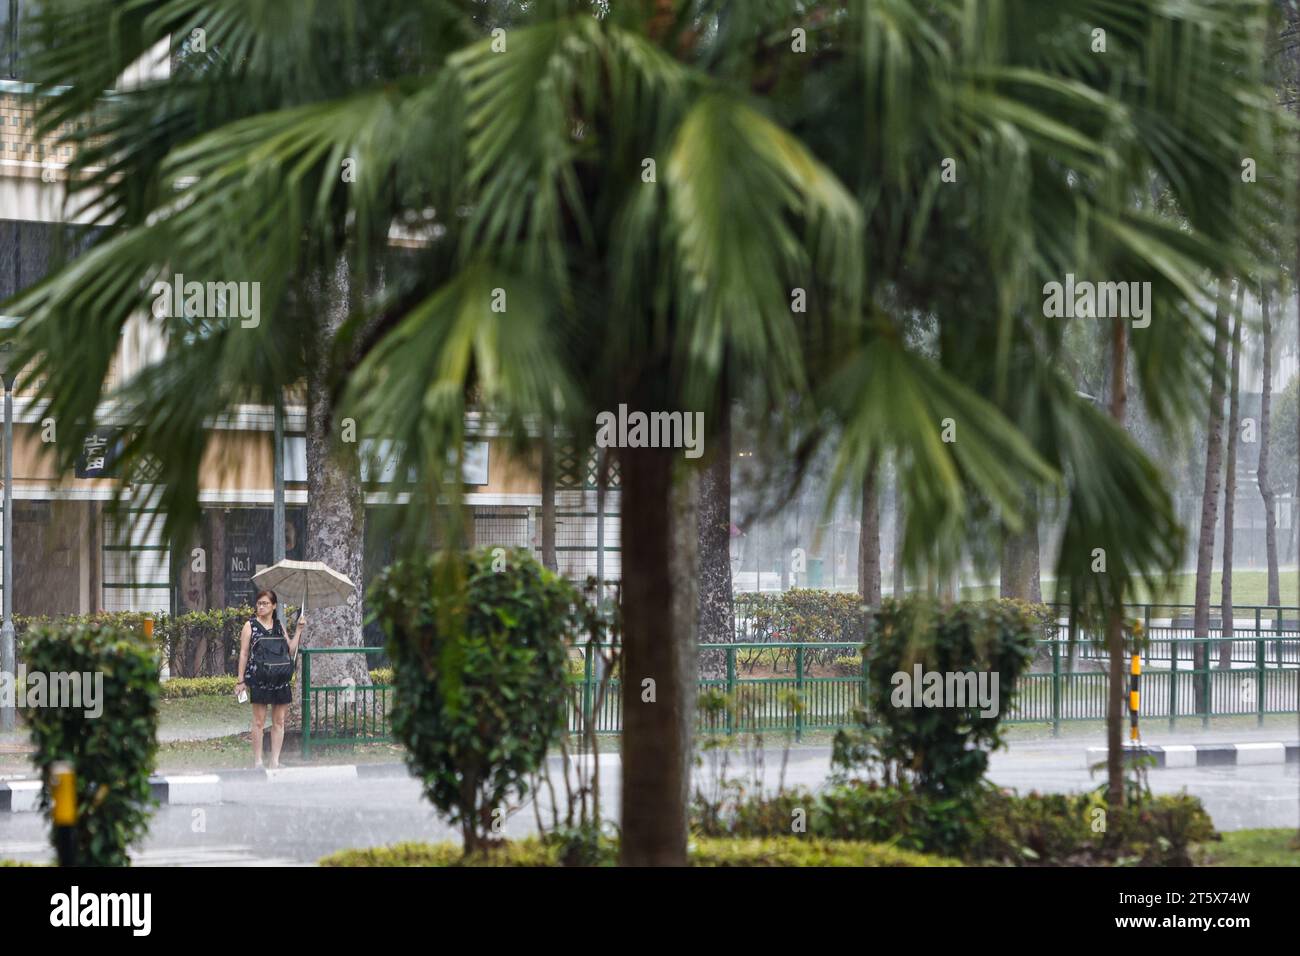 Singapur, Singapur, Singapur. November 2023. Eine Frau mit einem Regenschirm wird bei starkem Regen auf die Straße warten, da sie im Oktober bei den höchsten Temperaturen Ruhe bietet. Angesichts der globalen Erwärmung und des Klimawandels positioniert sich Singapur als CO2-Drehscheibe Asiens, indem es CO2-Steuern einführt und nachhaltige Energiepolitiken umsetzt und gleichzeitig versucht, den Stadtstaat durch das Pflanzen weiterer Bäume grüner zu machen. (Kreditbild: © Daniel Ceng Shou-Yi/ZUMA Press Wire) NUR REDAKTIONELLE VERWENDUNG! Nicht für kommerzielle ZWECKE! Stockfoto